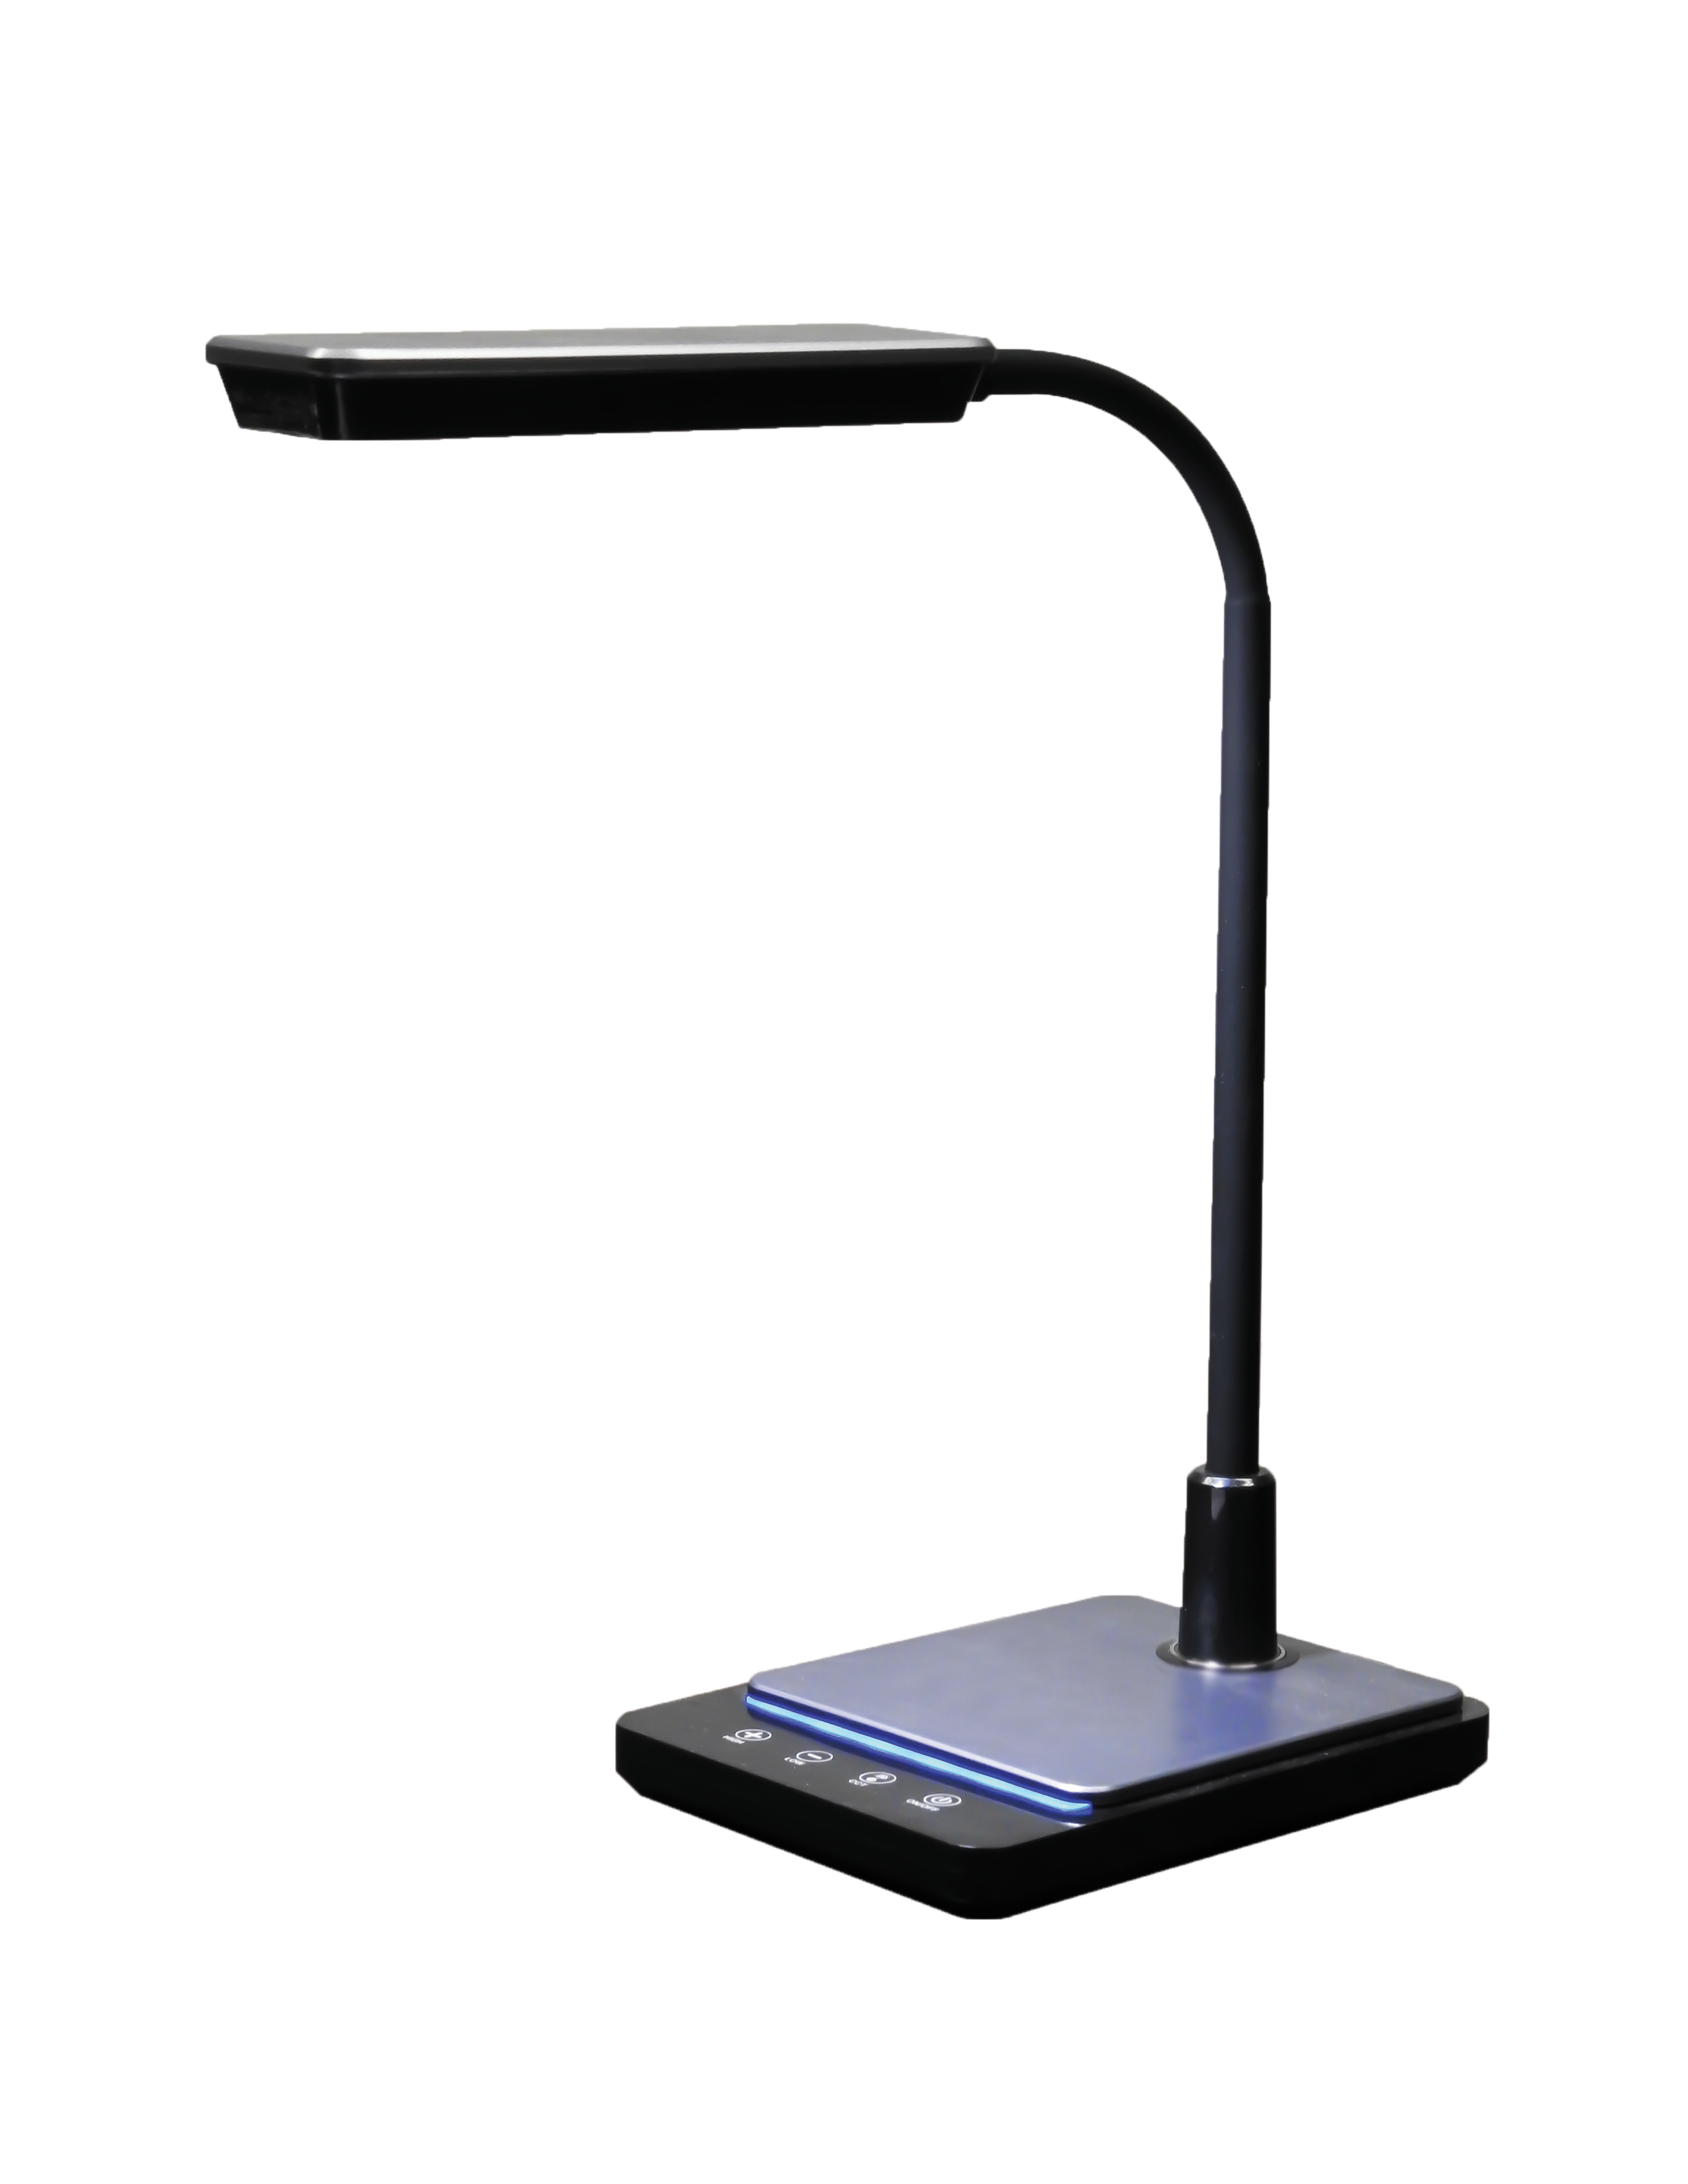 RDL-75U-B/ LED Desk Lamp with USB Fast Charging